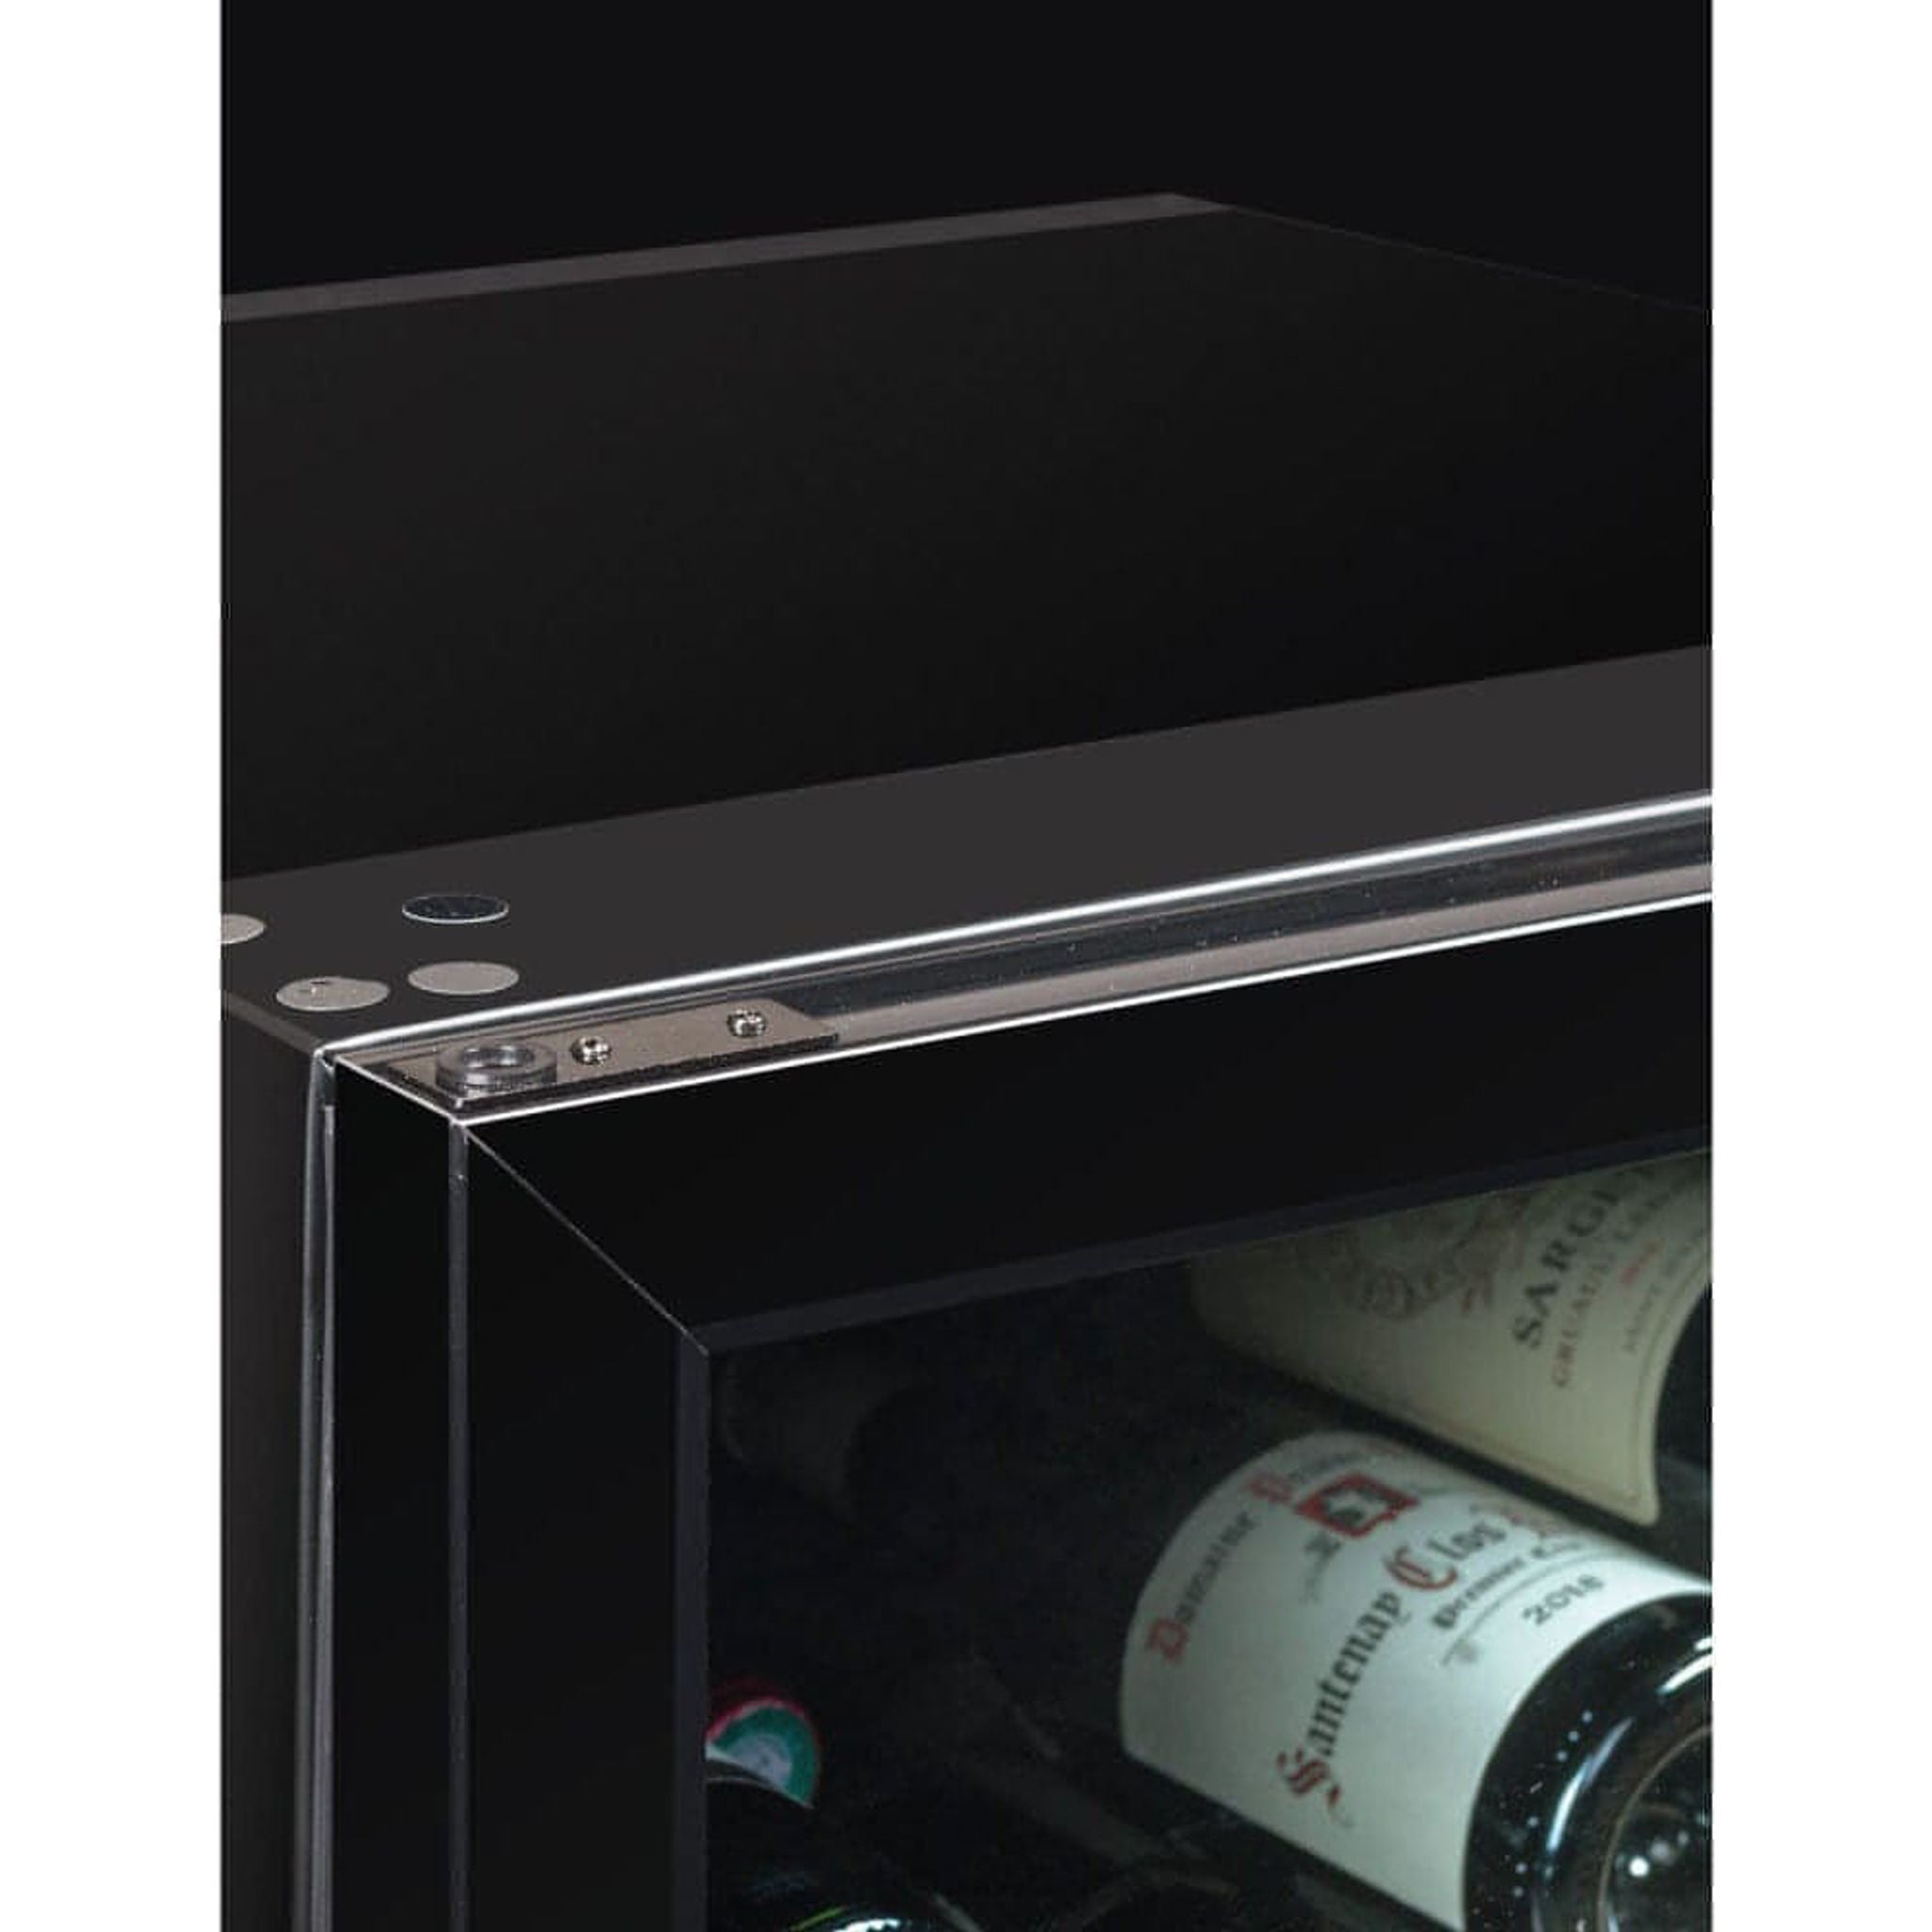 La Sommeliere - 147 Bottle - Freestanding Wine Cabinet - CTVNE147